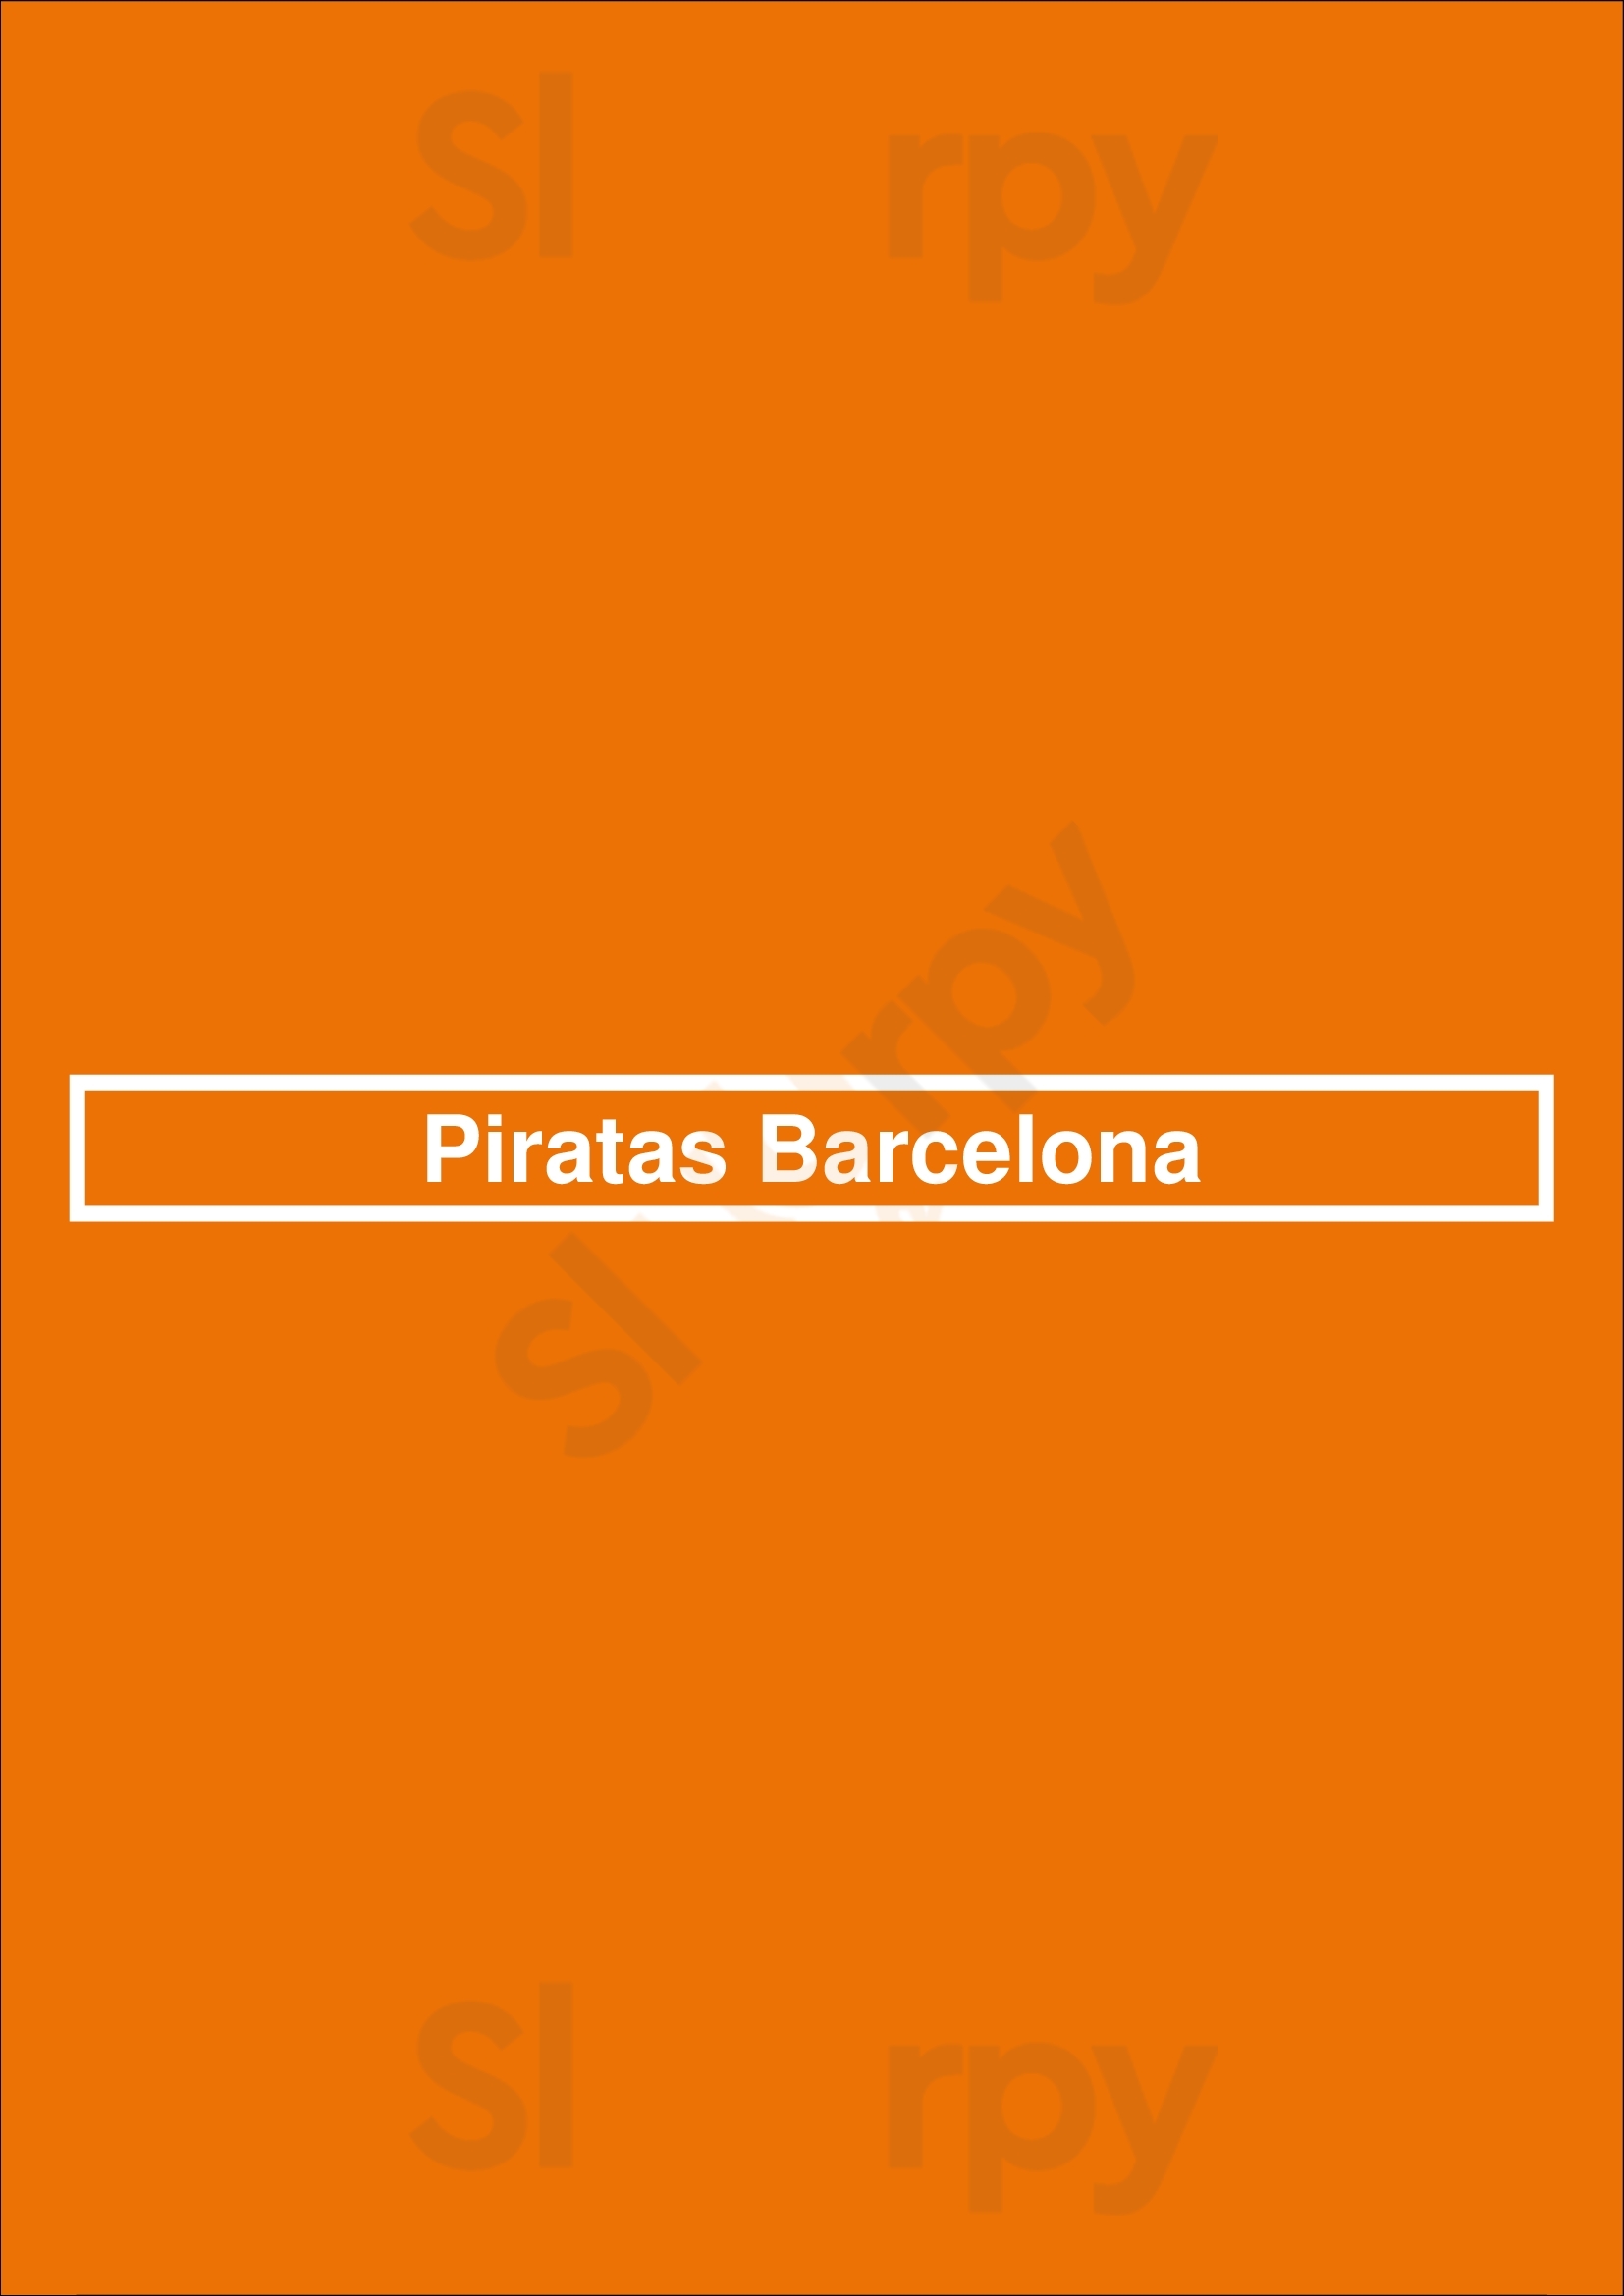 Piratas Barcelona Barcelona Menu - 1